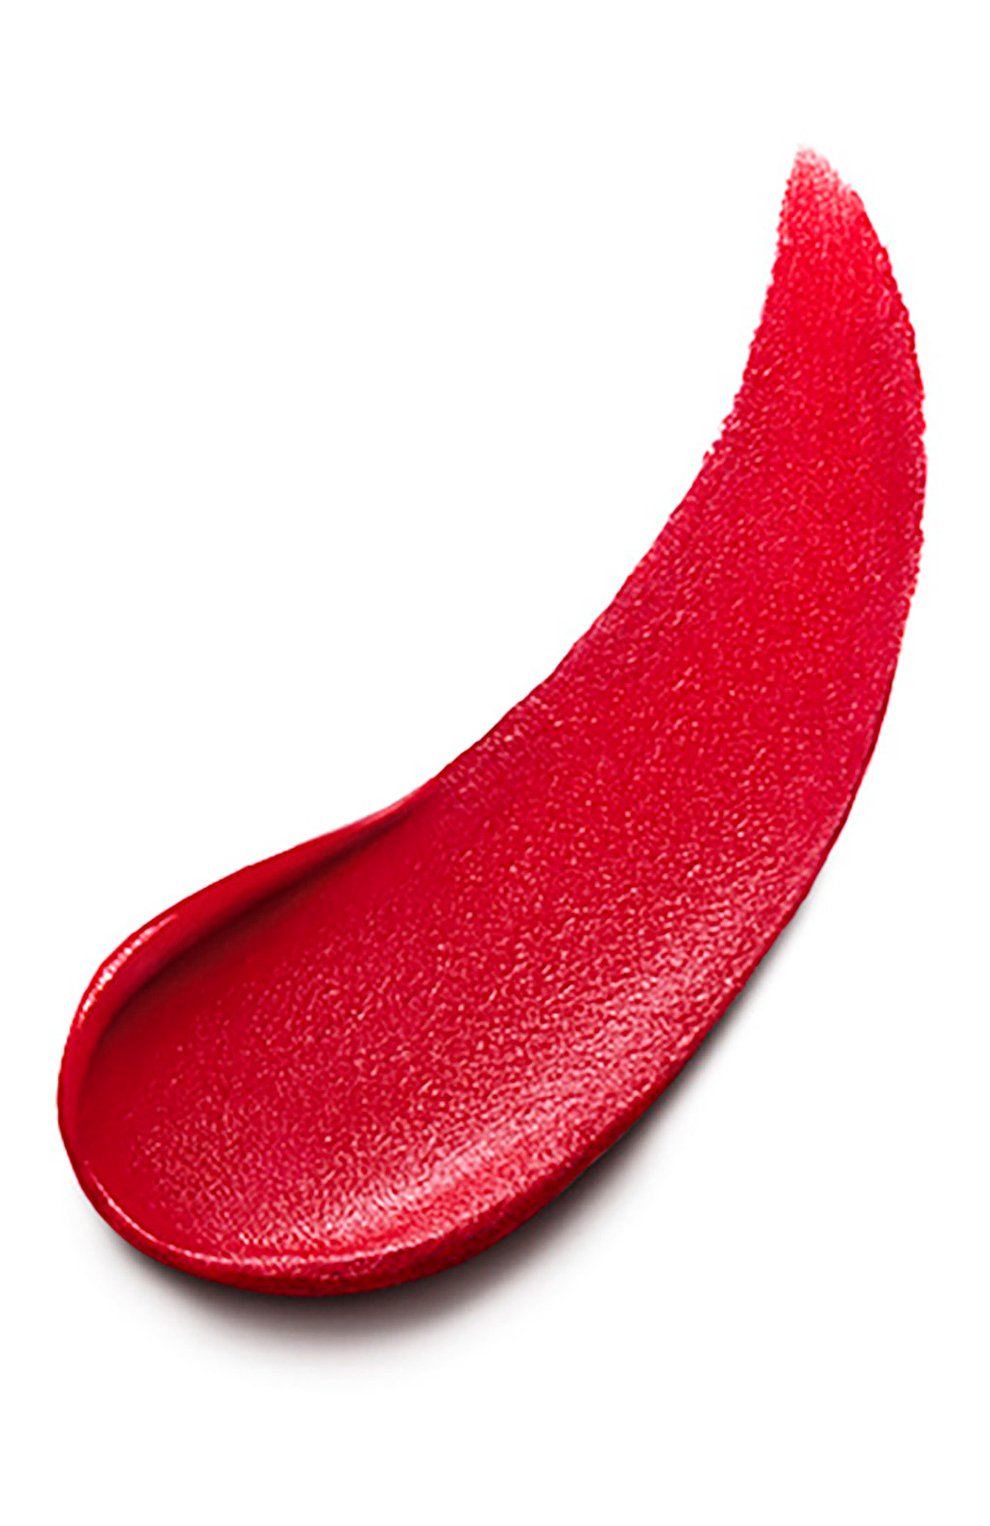 Матовая помада, оттенок 103 legend of rouge (4g) CLÉ DE PEAU BEAUTÉ  цвета, арт. 18536CP | Фото 2 (Финишное покрытие: Матовый)